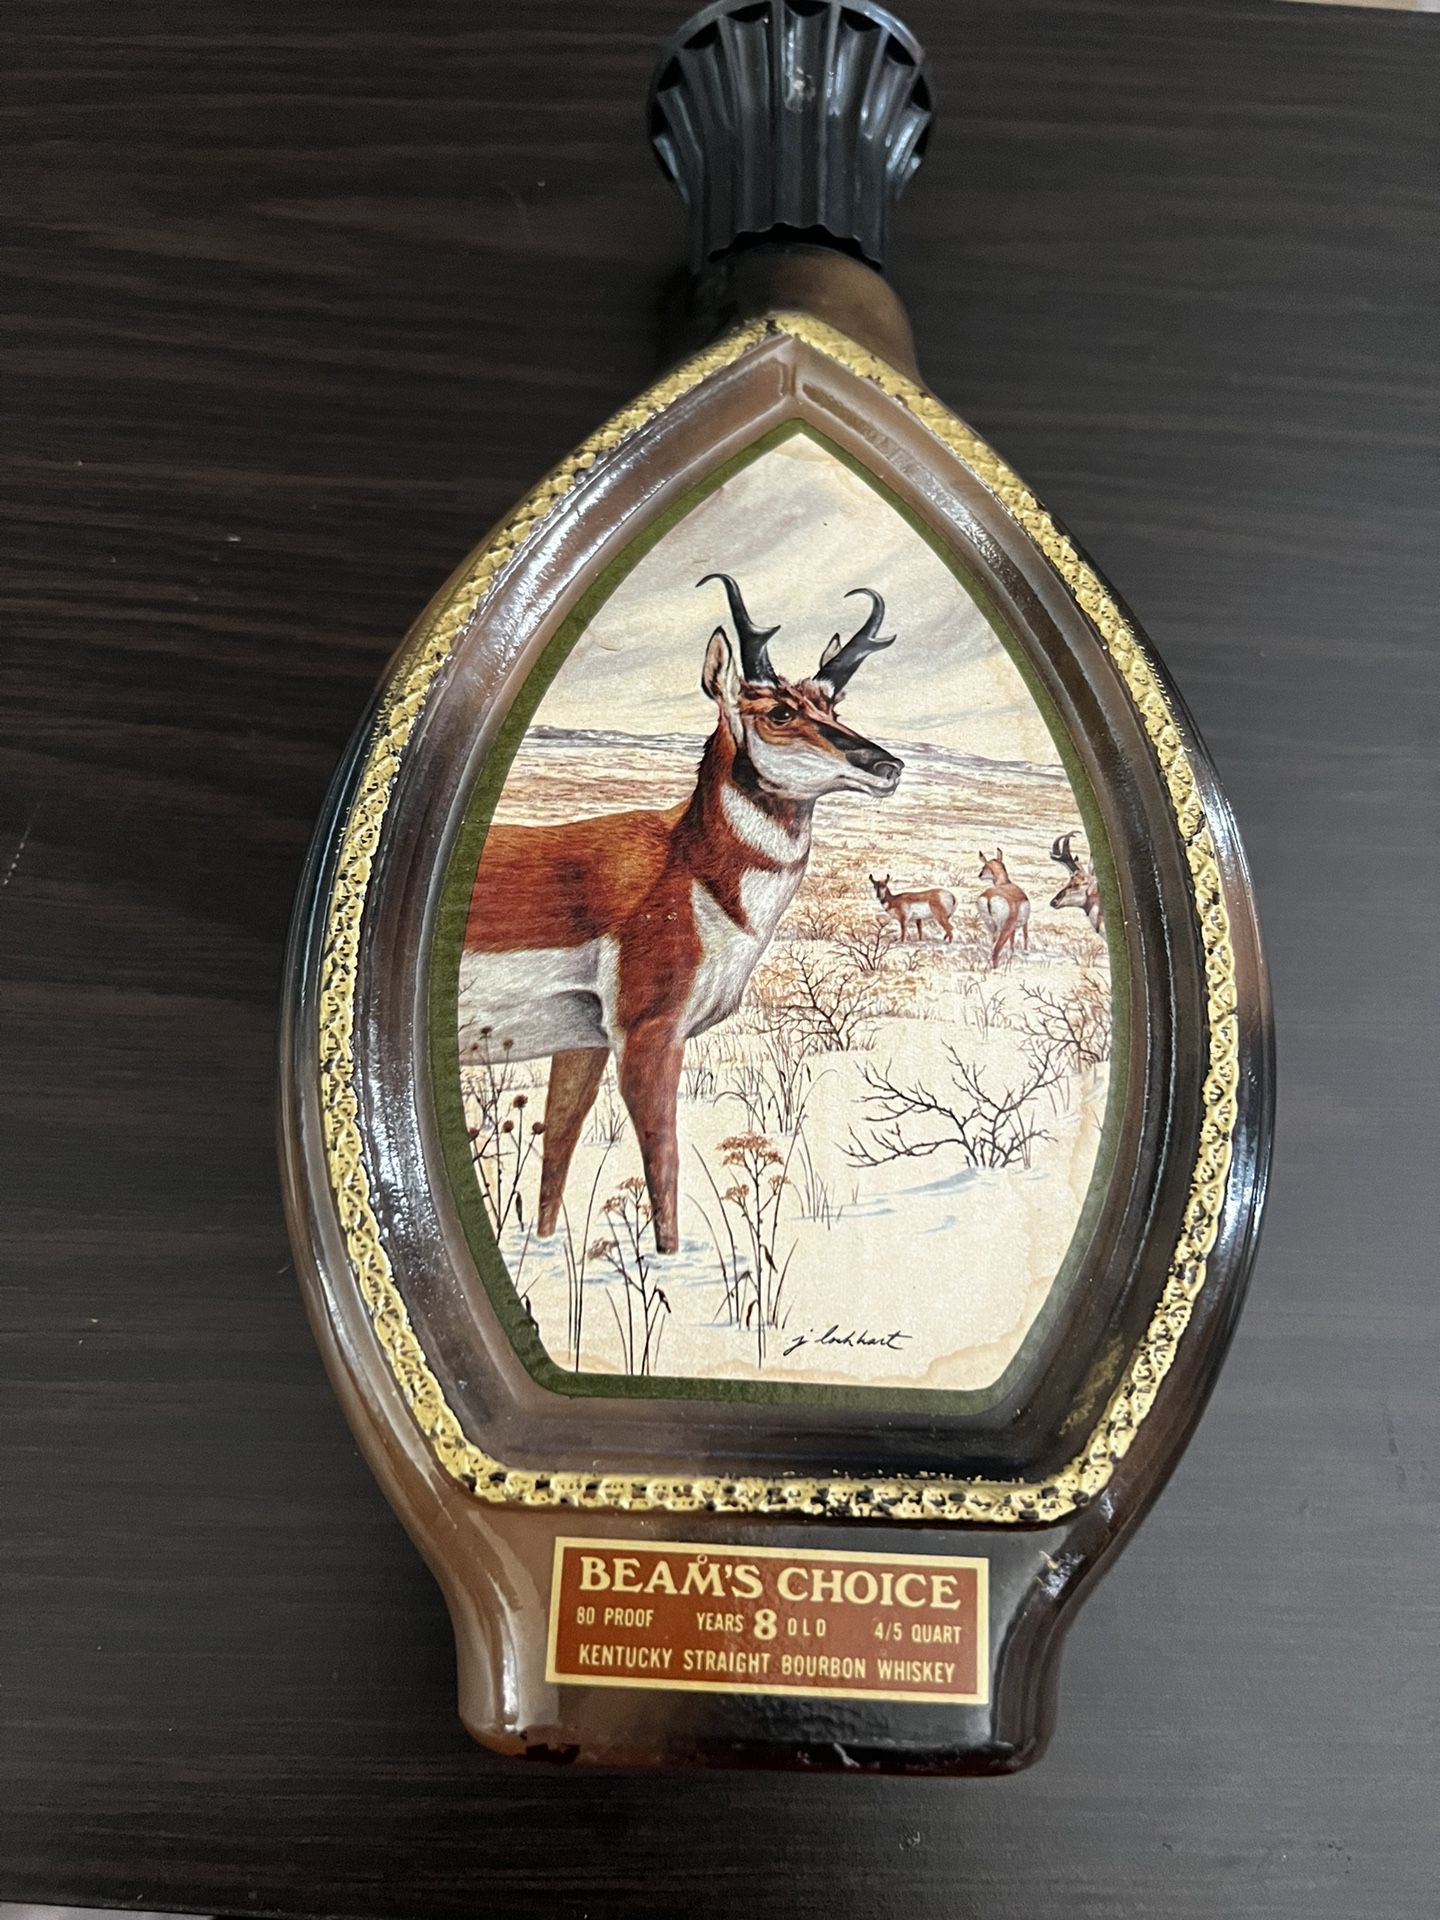 1976 JIM BEAM'S CHOICE KENTUCKY BOURBON EMPTY BOTTLE -Pronghorn Antelope 